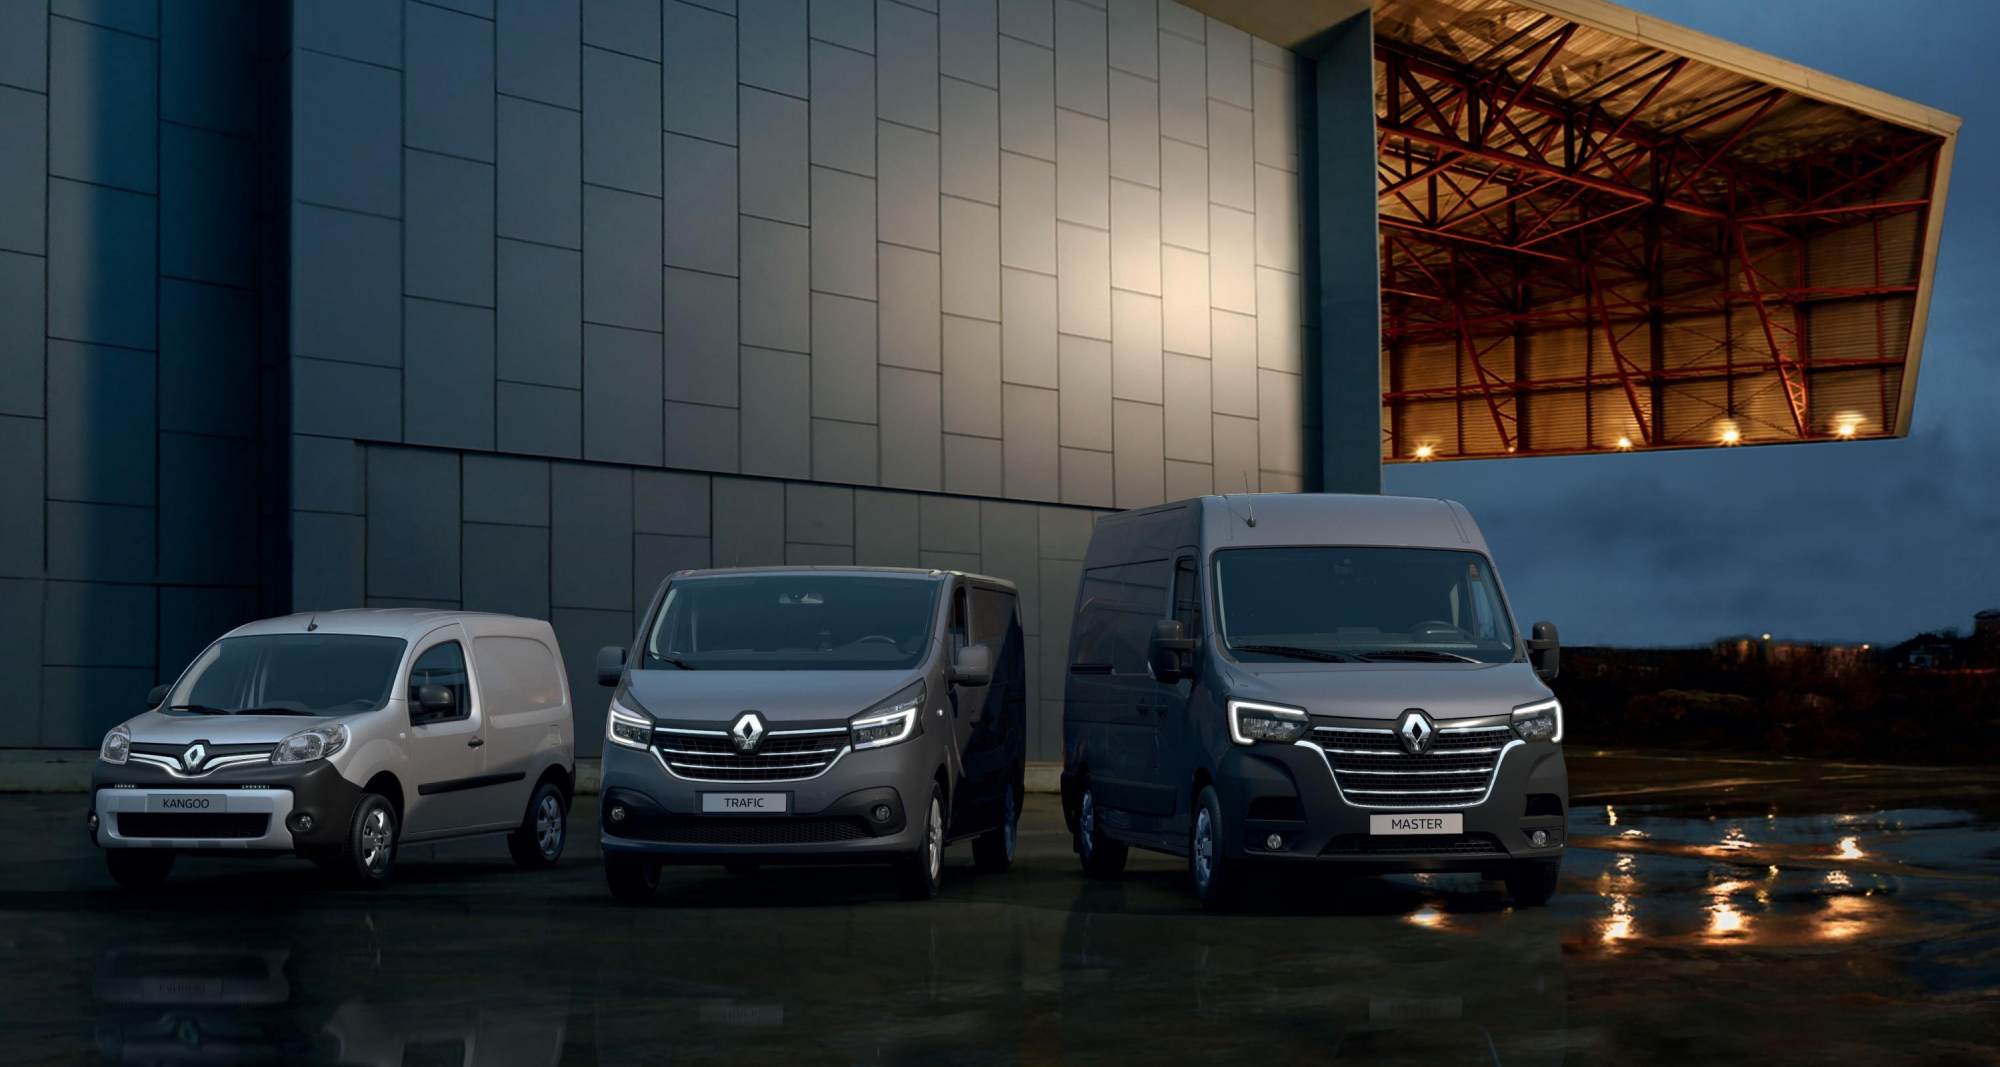 Quel fourgon Renault devriez-vous choisir selon votre profession d'artisan ?